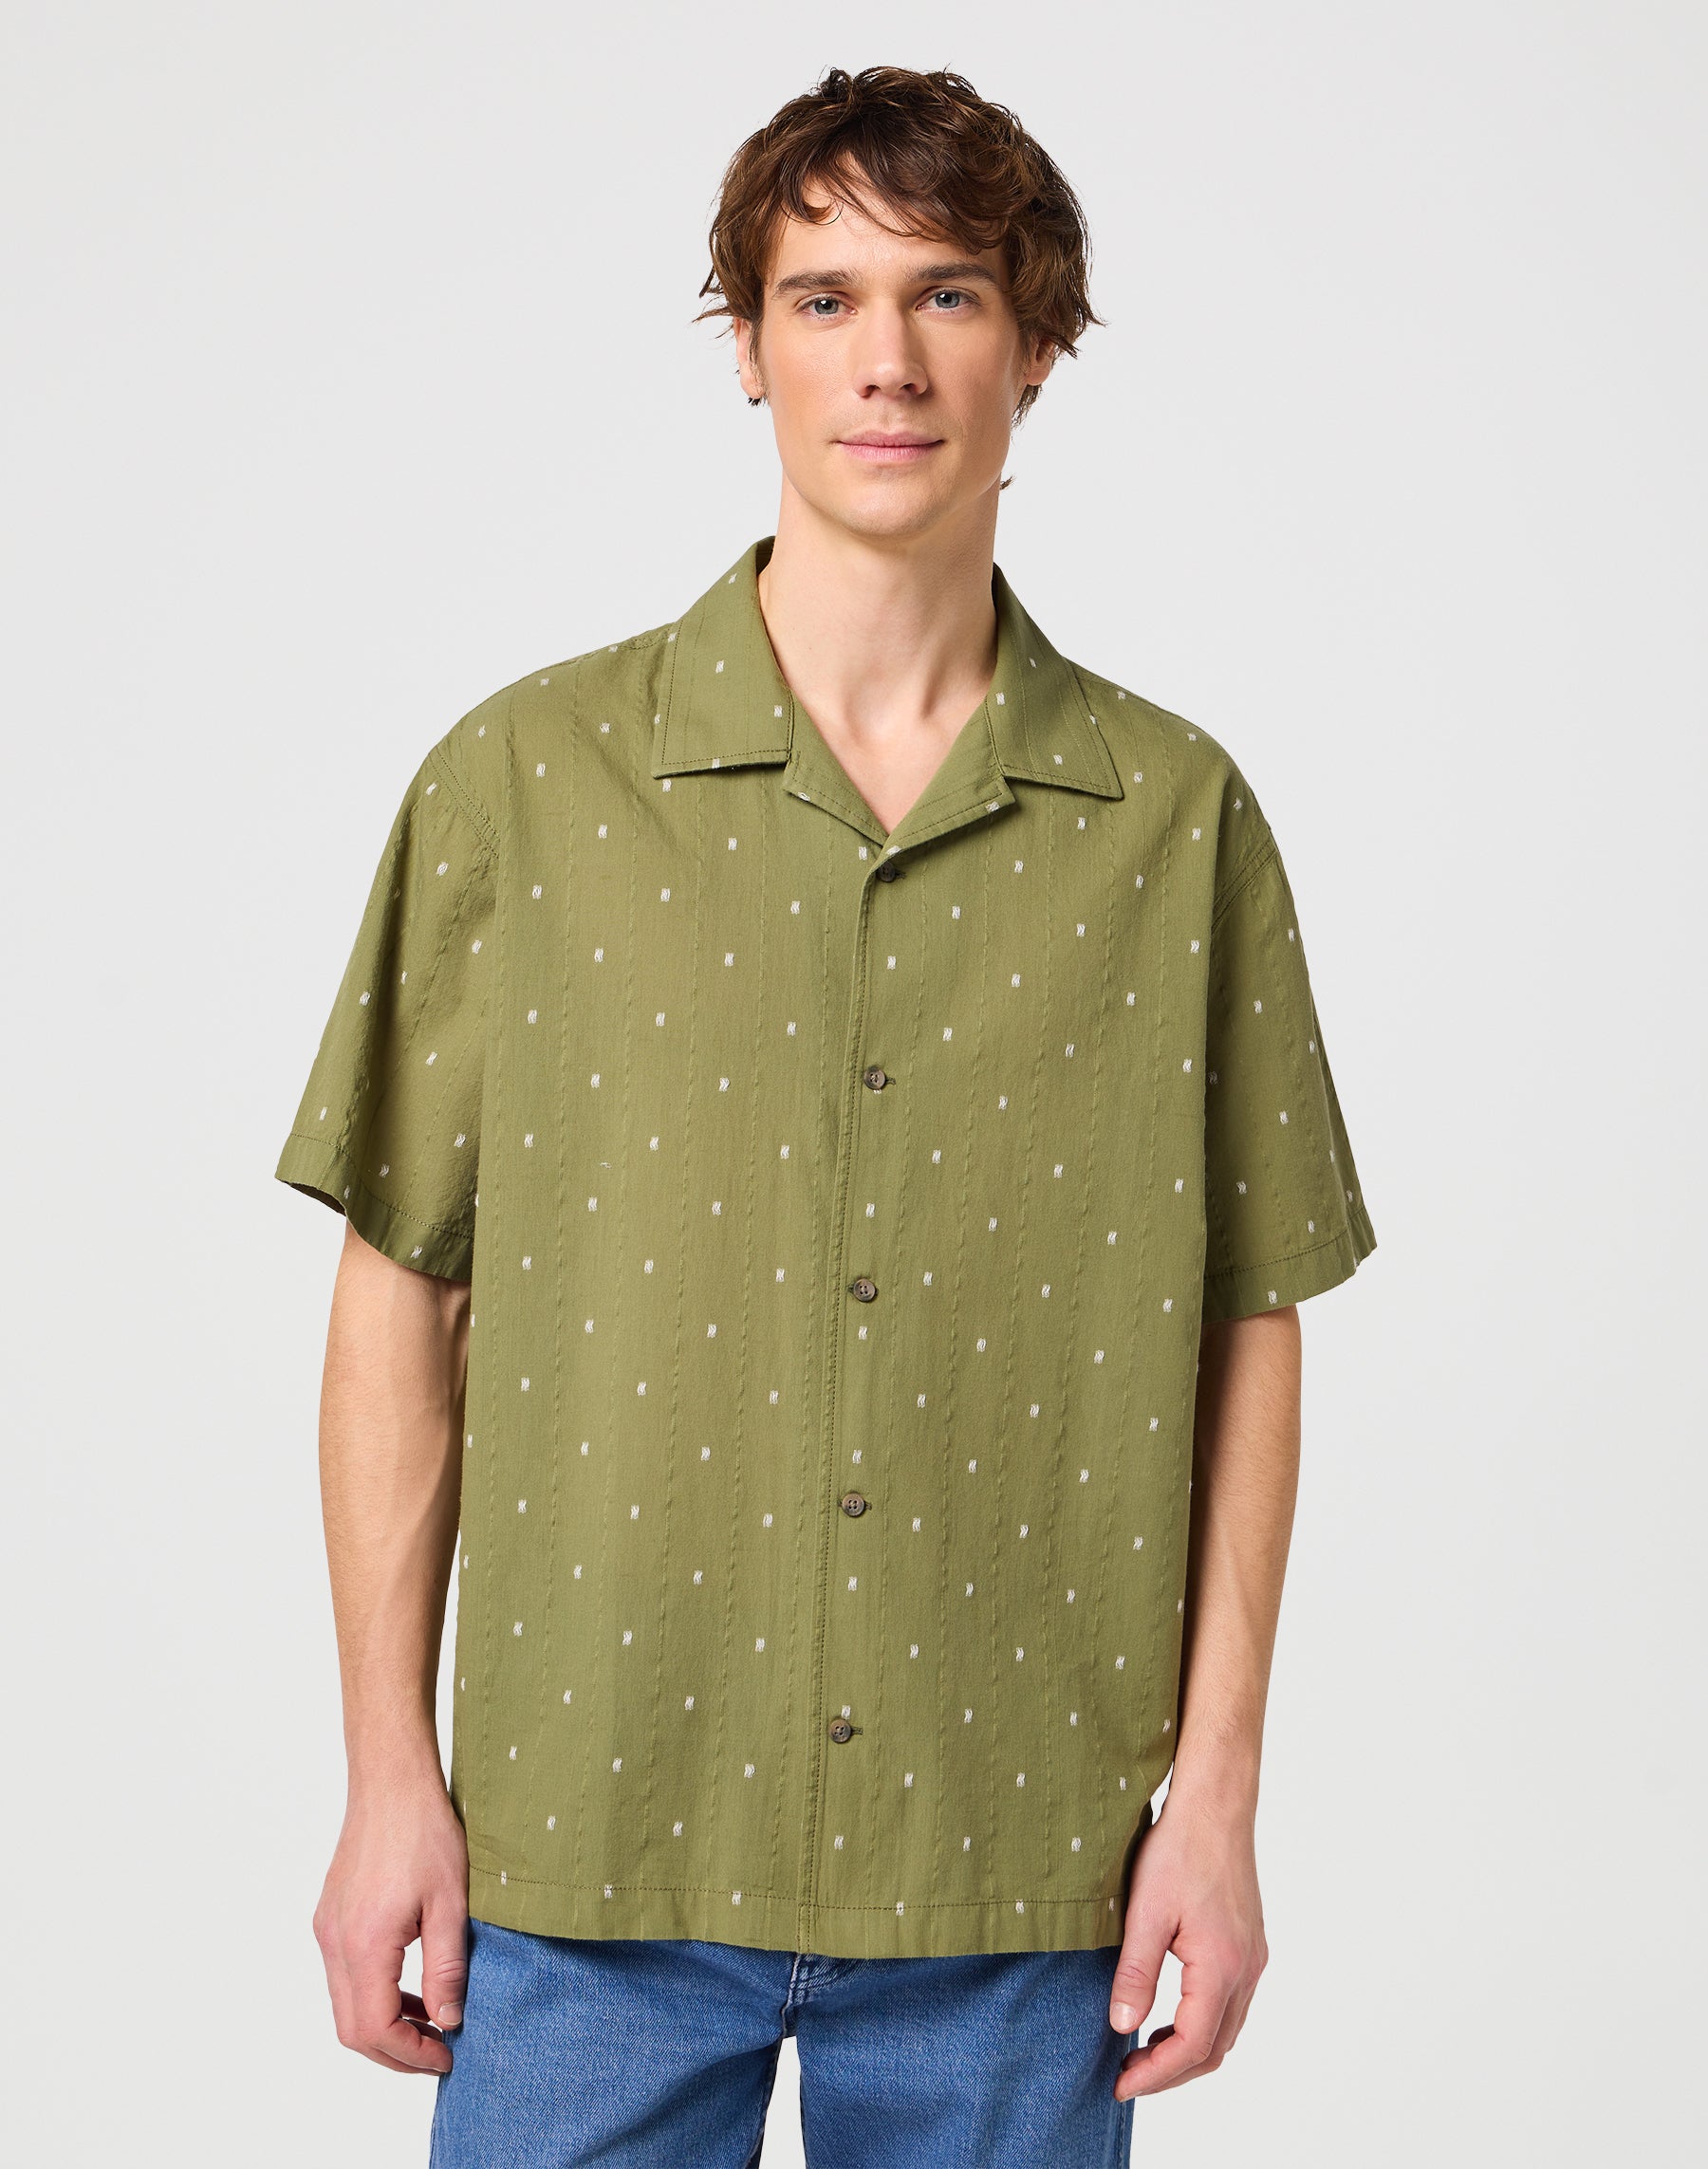 Resort Shirt in Dusty Olive Hemden Wrangler   